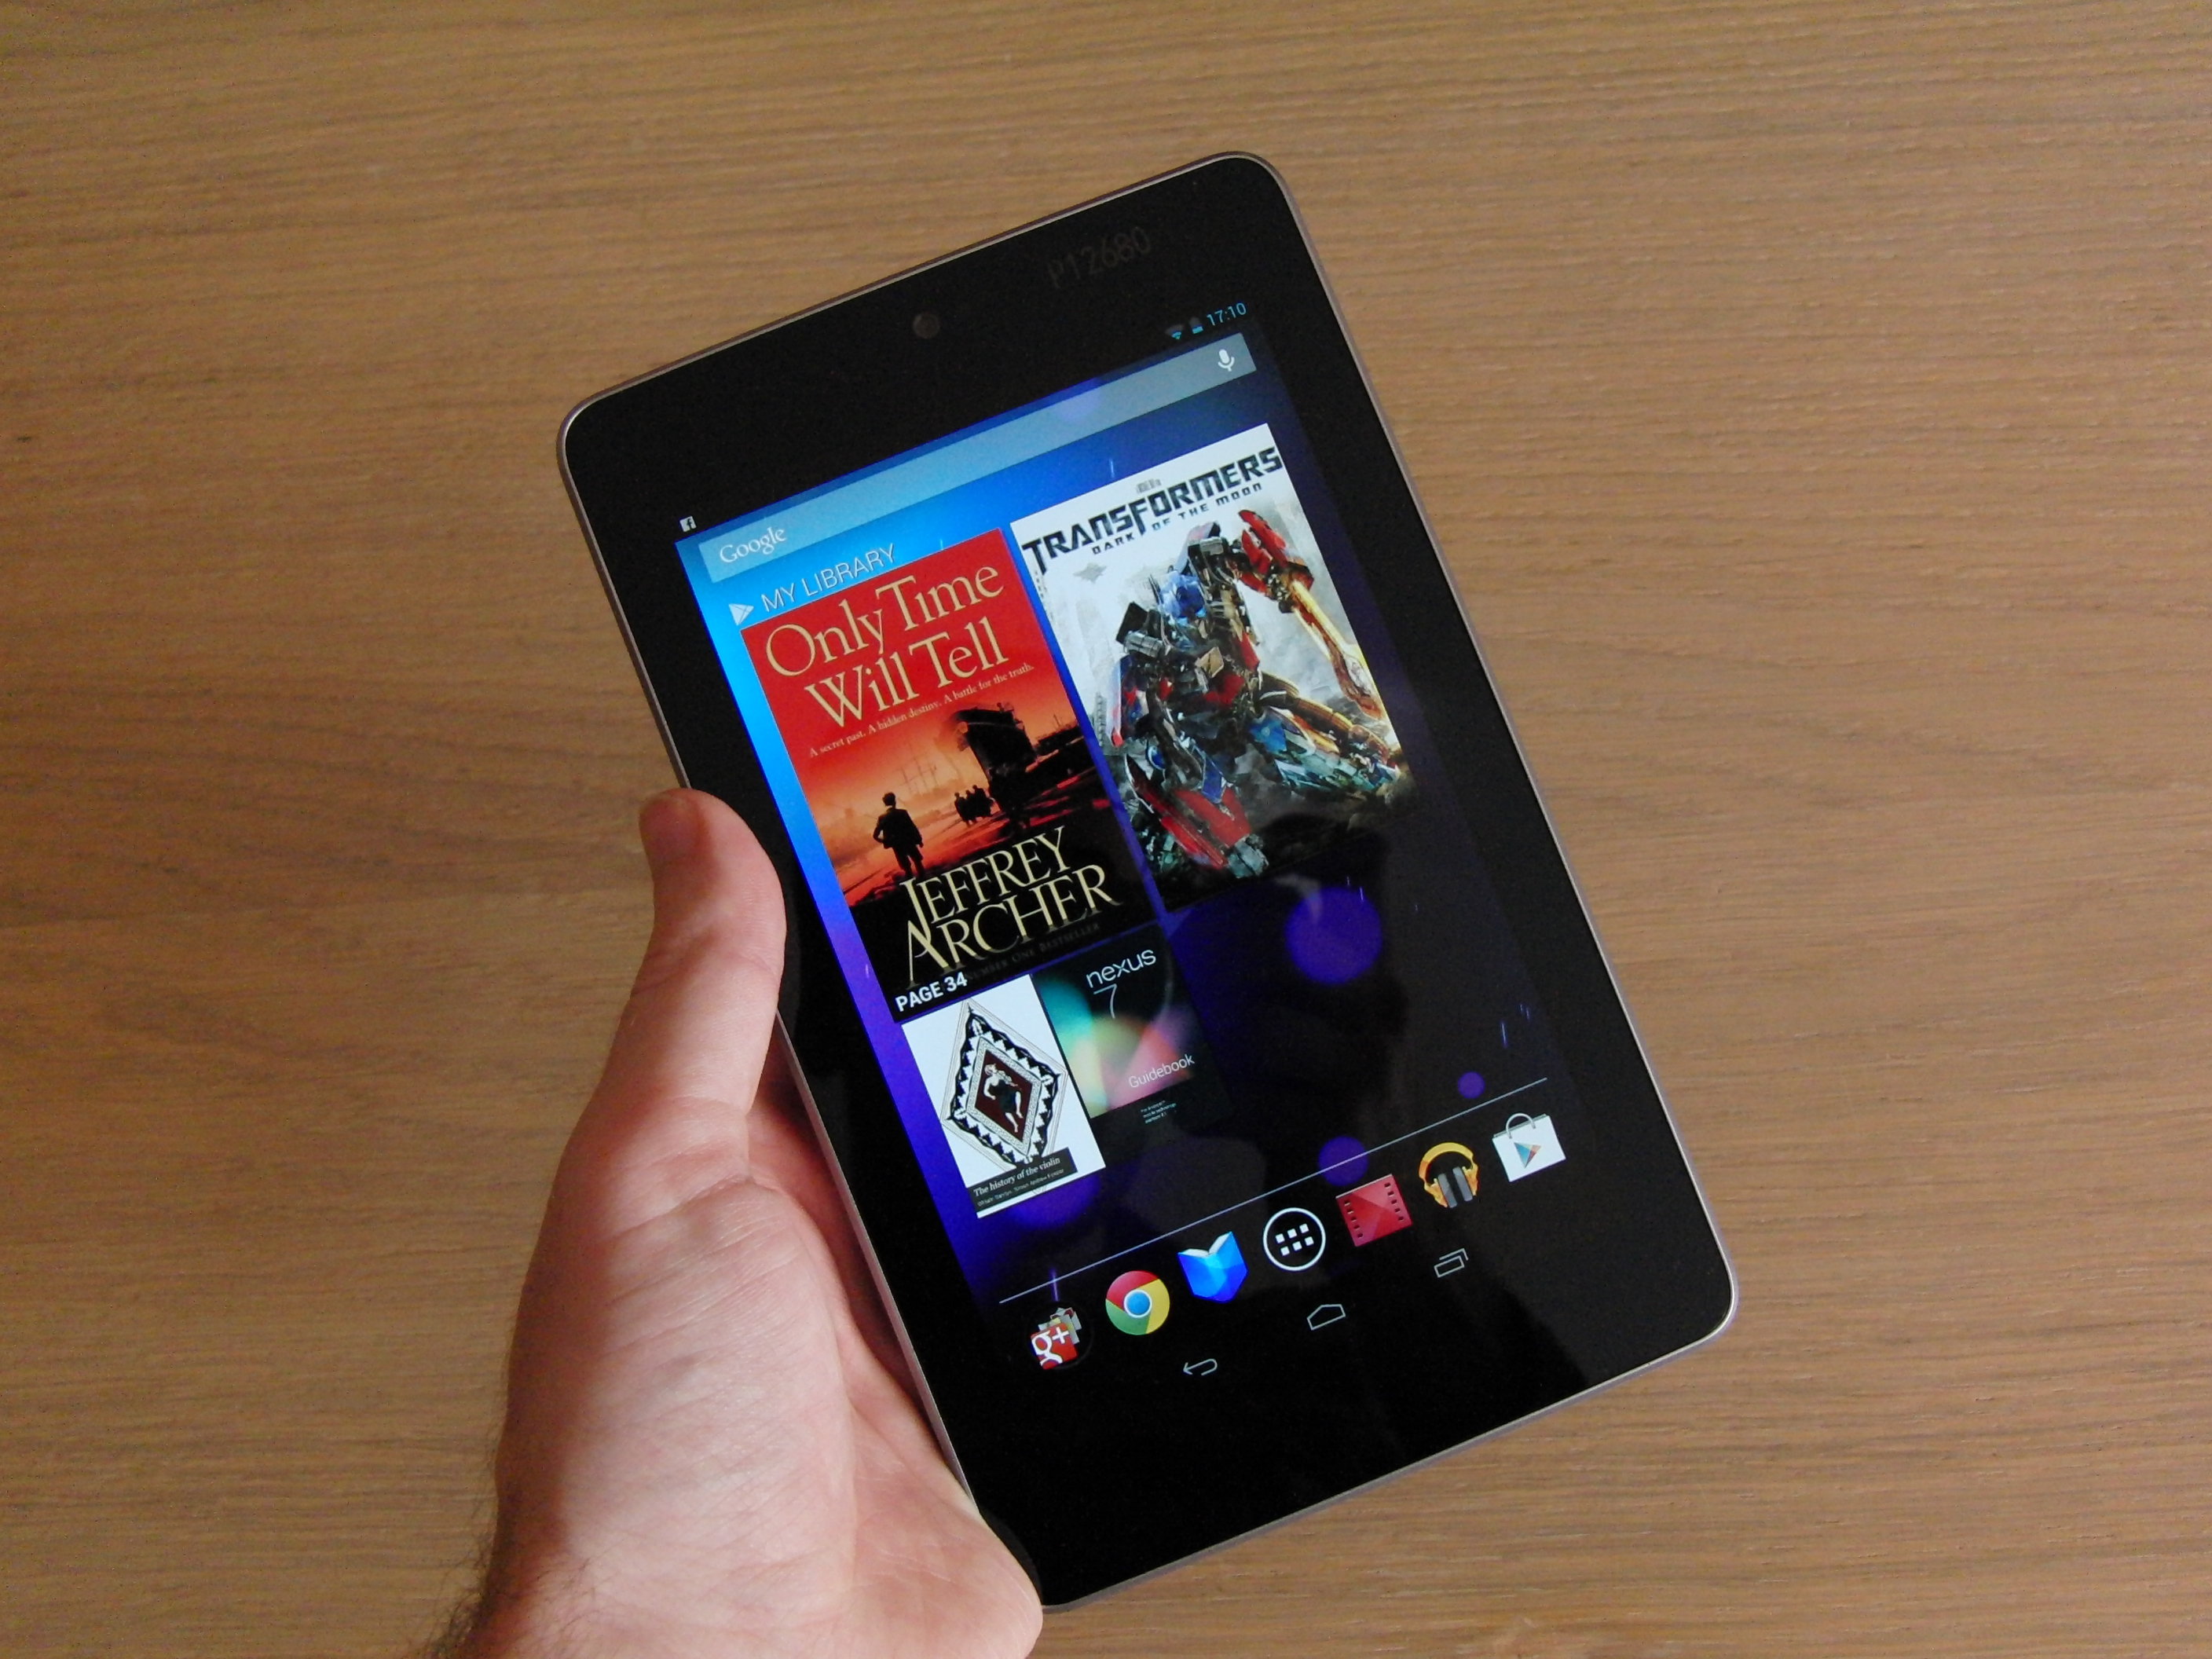 Nexus 7 thế hệ 2 sẽ ra mắt tháng 7, màn hình đẹp, giá rẻ 1